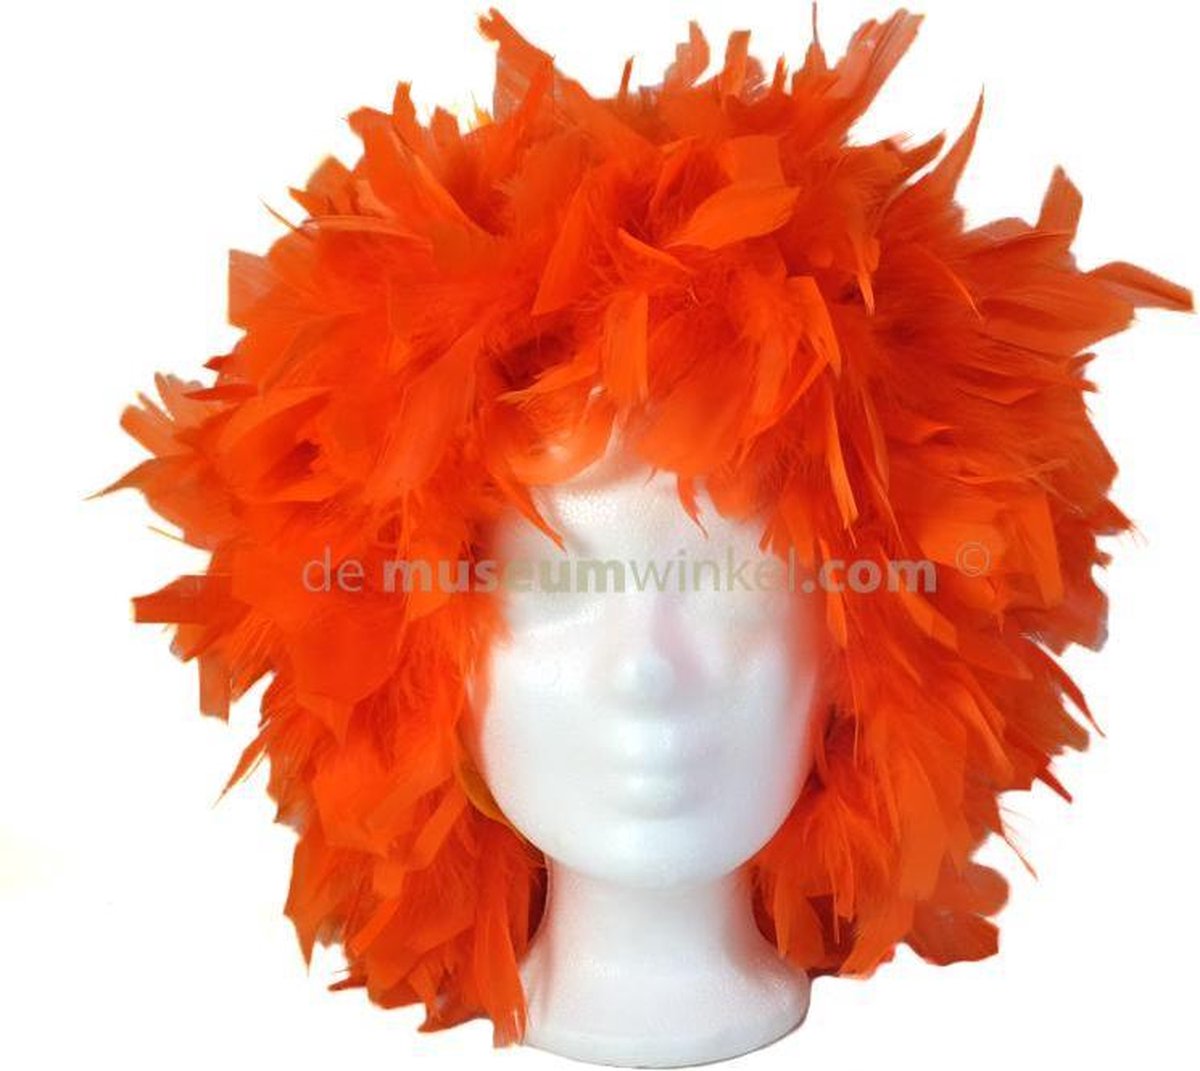 Oranje pruik - Koningsdag pruik - Koningsdag veren pruik - Koningsdag accessoires - Merkloos